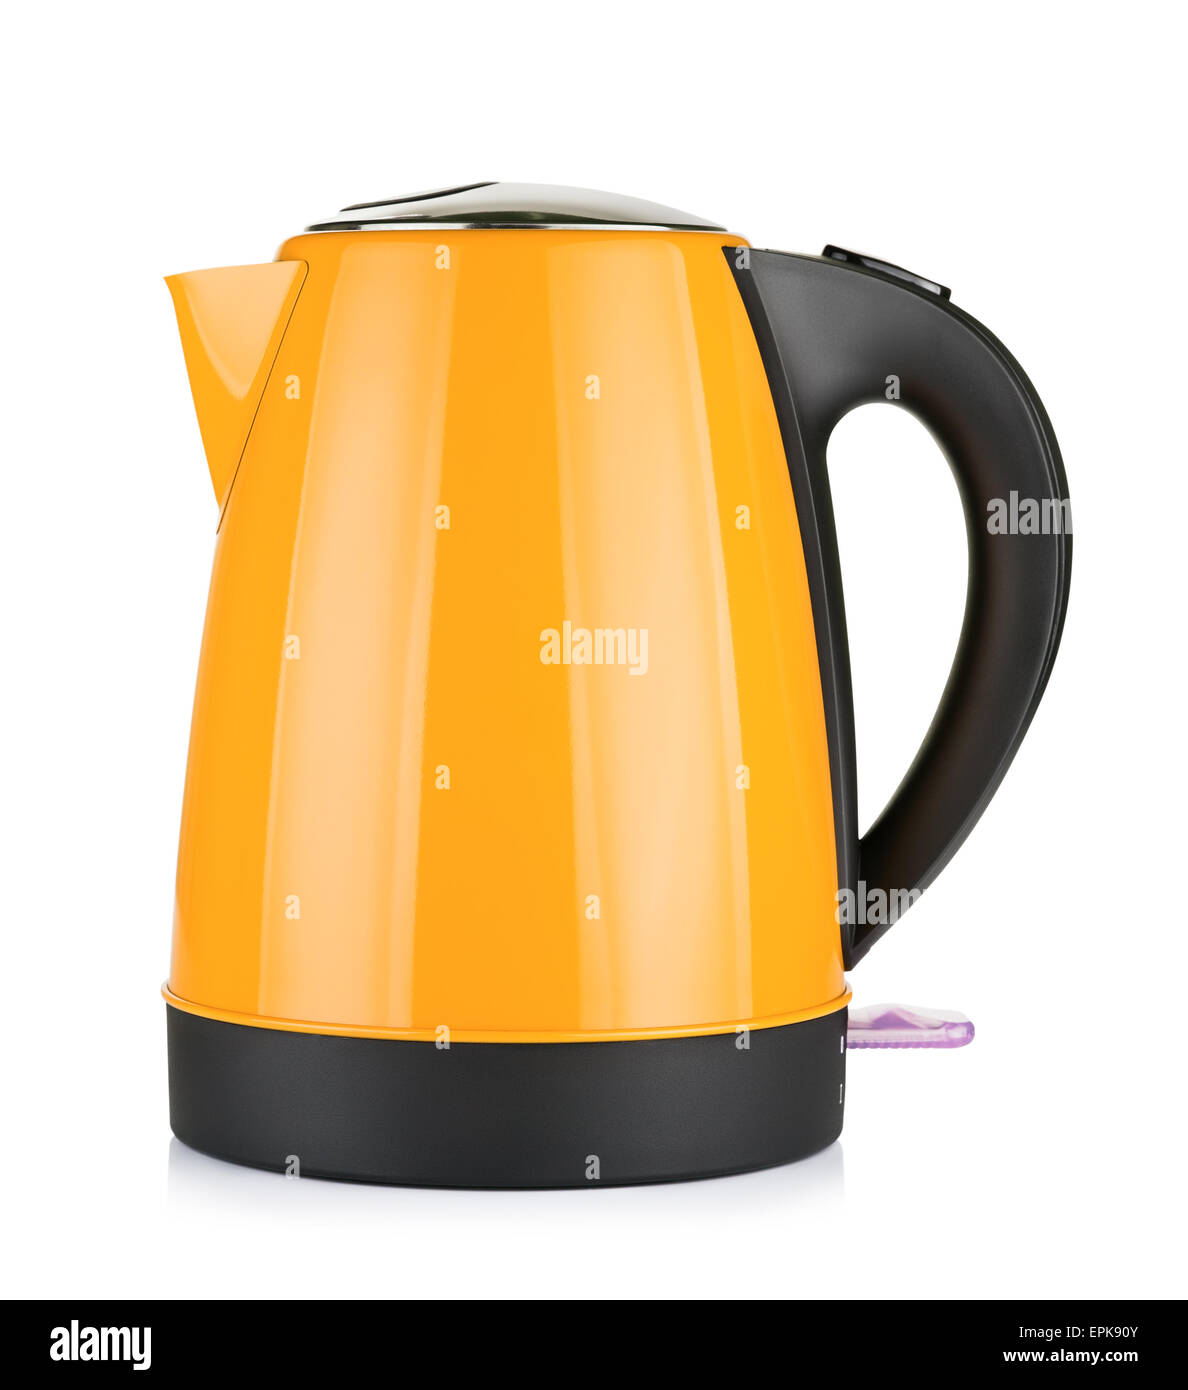 https://c8.alamy.com/comp/EPK90Y/modern-orange-electric-kettle-isolated-on-white-EPK90Y.jpg